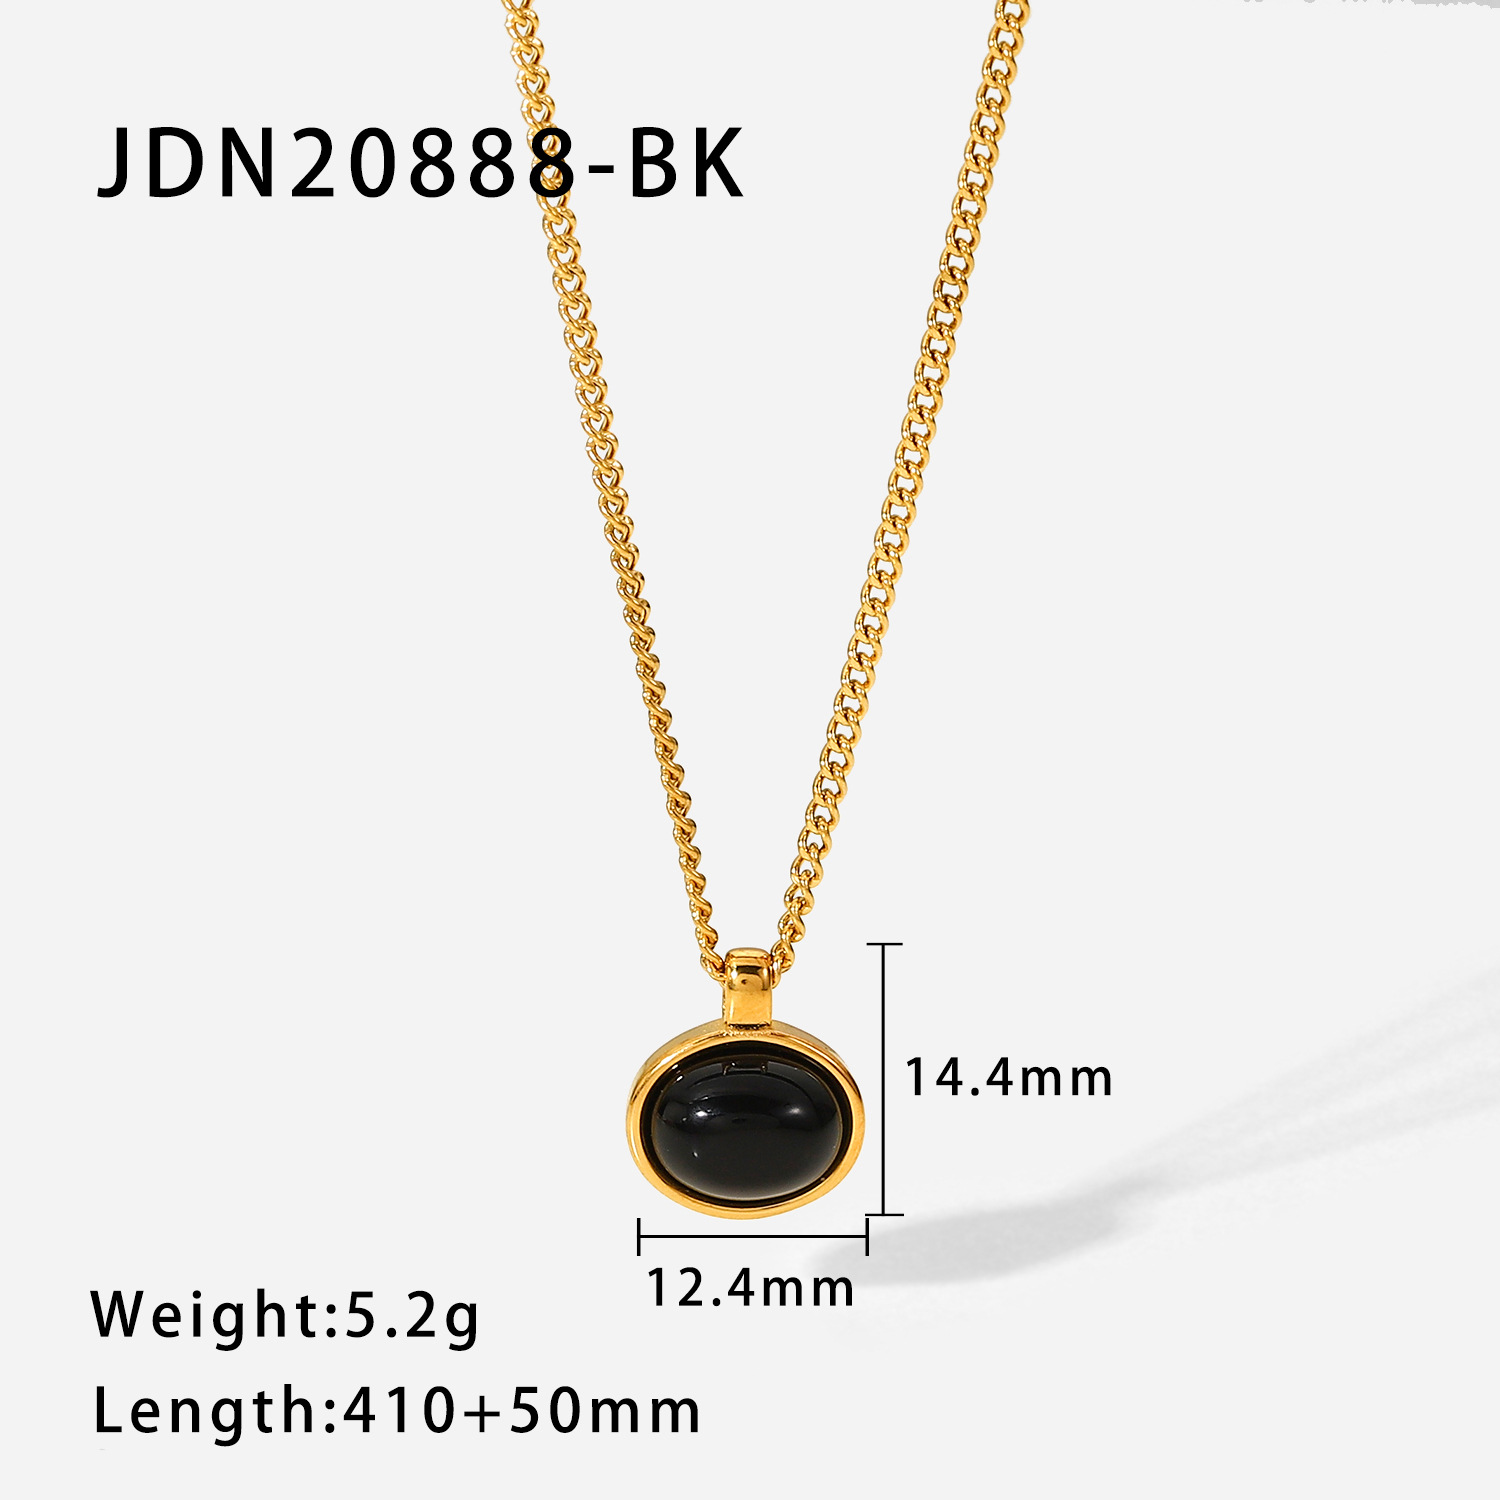 1:JDN20888-BK